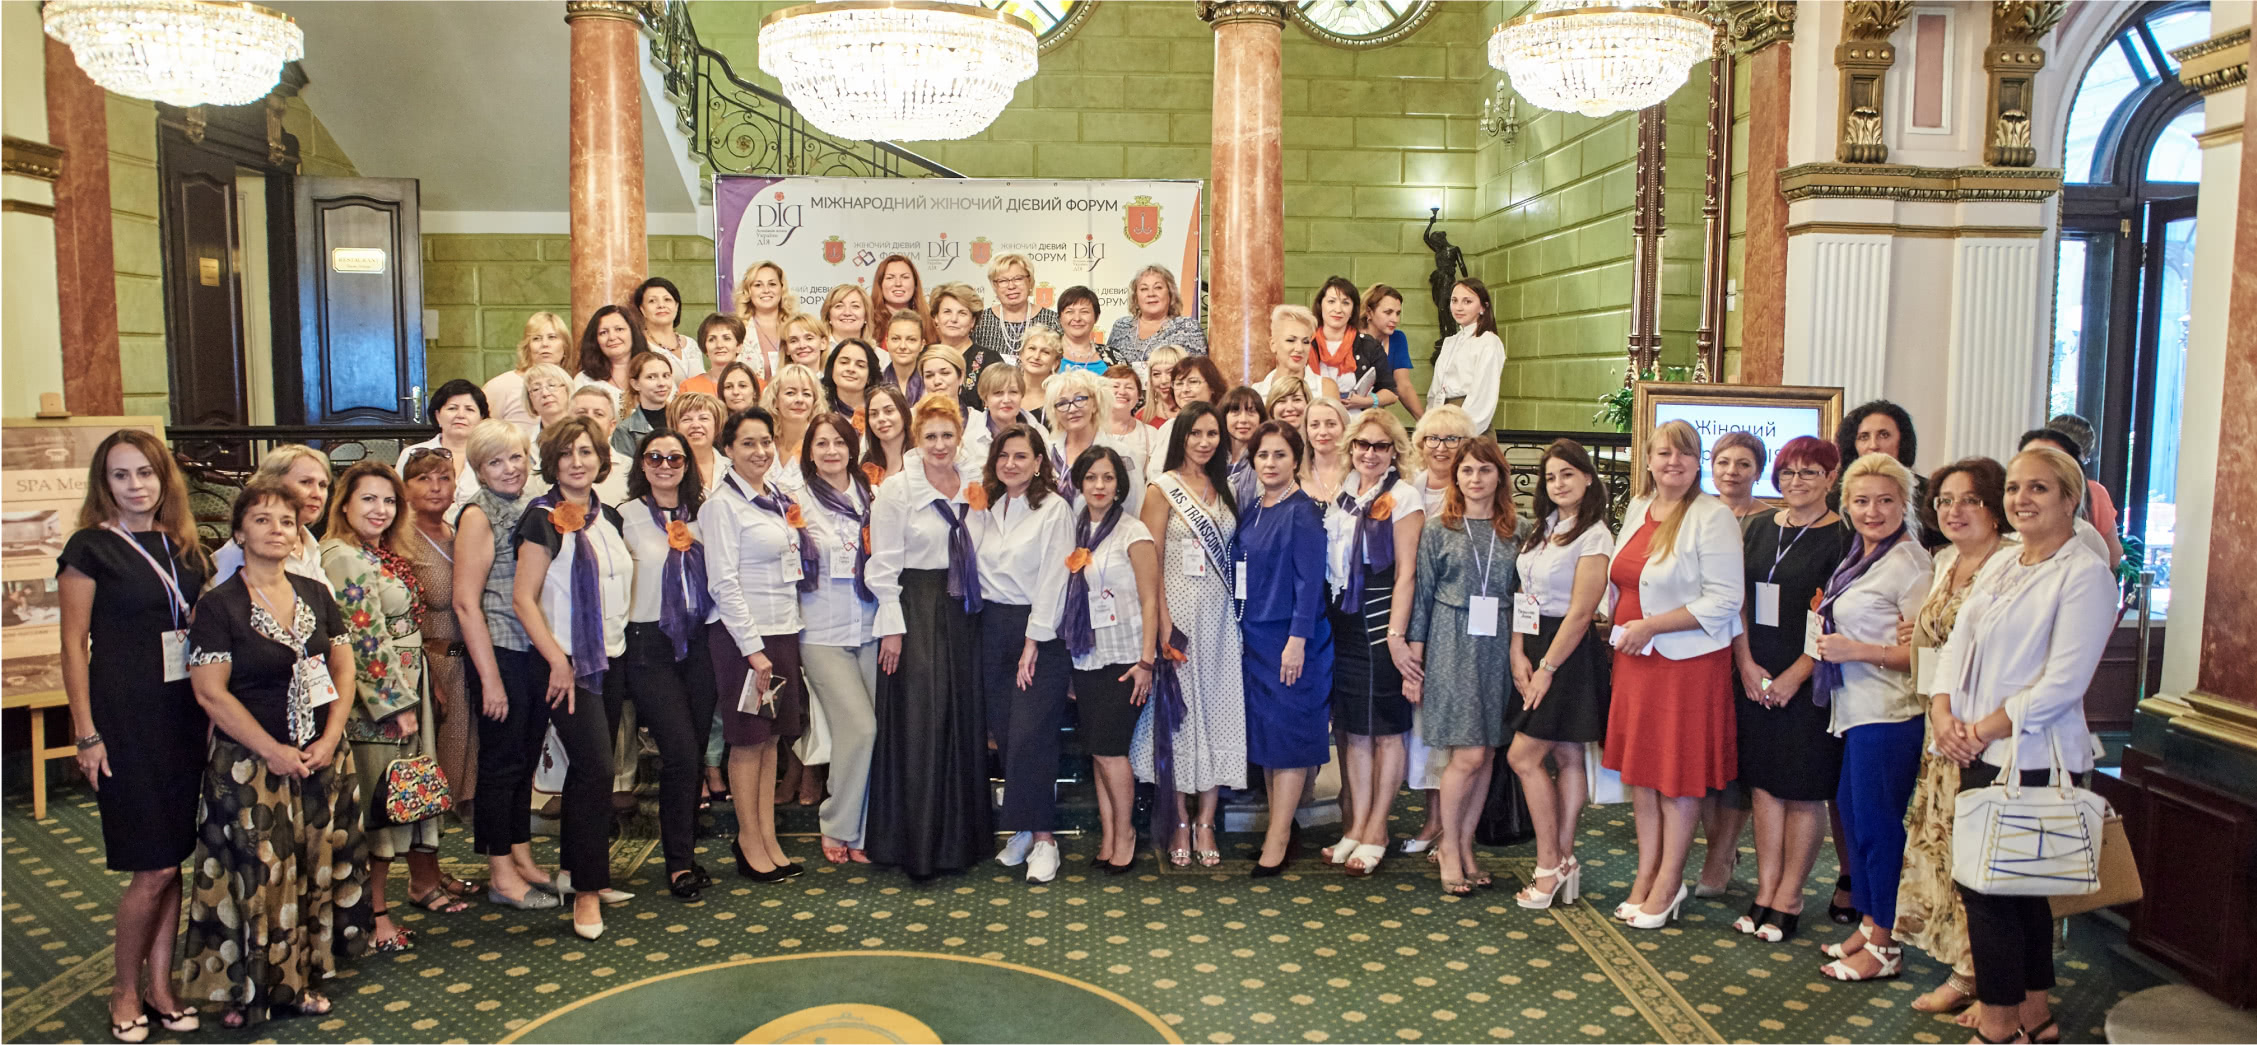 Члены «Ассоциации женщин Украины «ДIЯ»» в отеле «Лондонская» фото